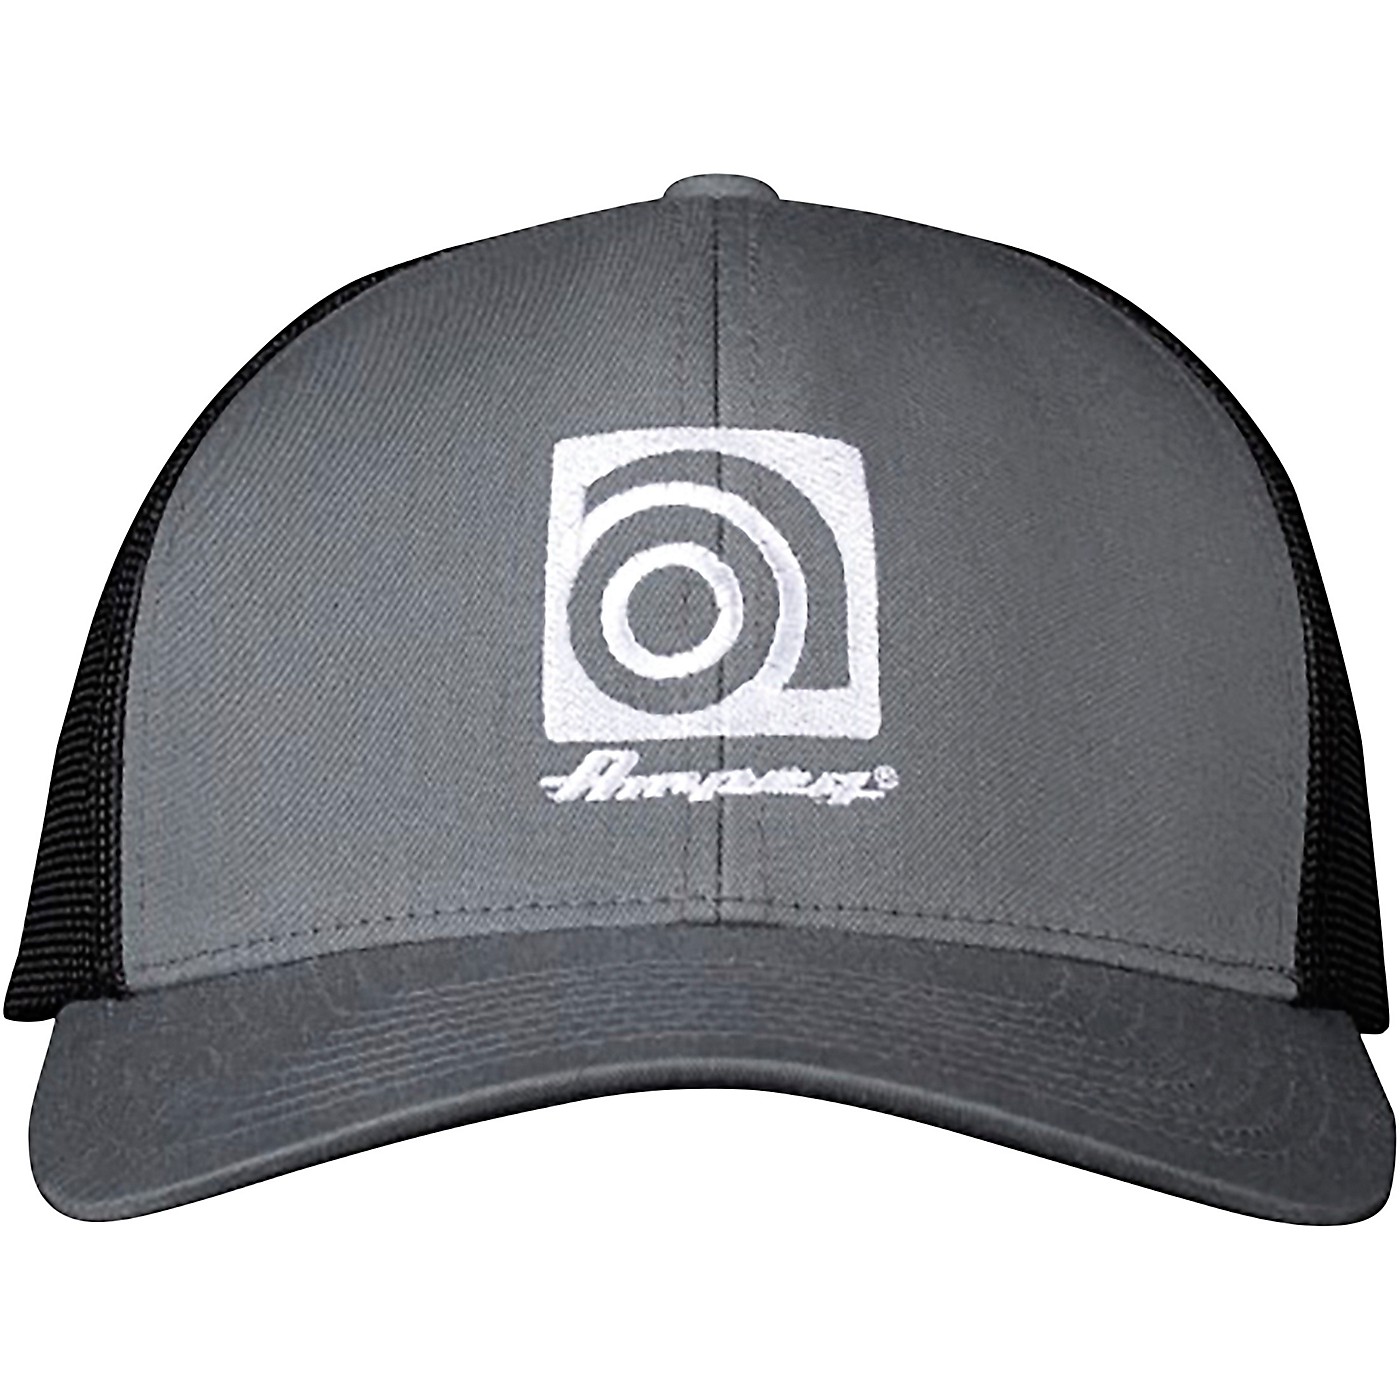 Ampeg Snap Back Hat - Grey & Black thumbnail